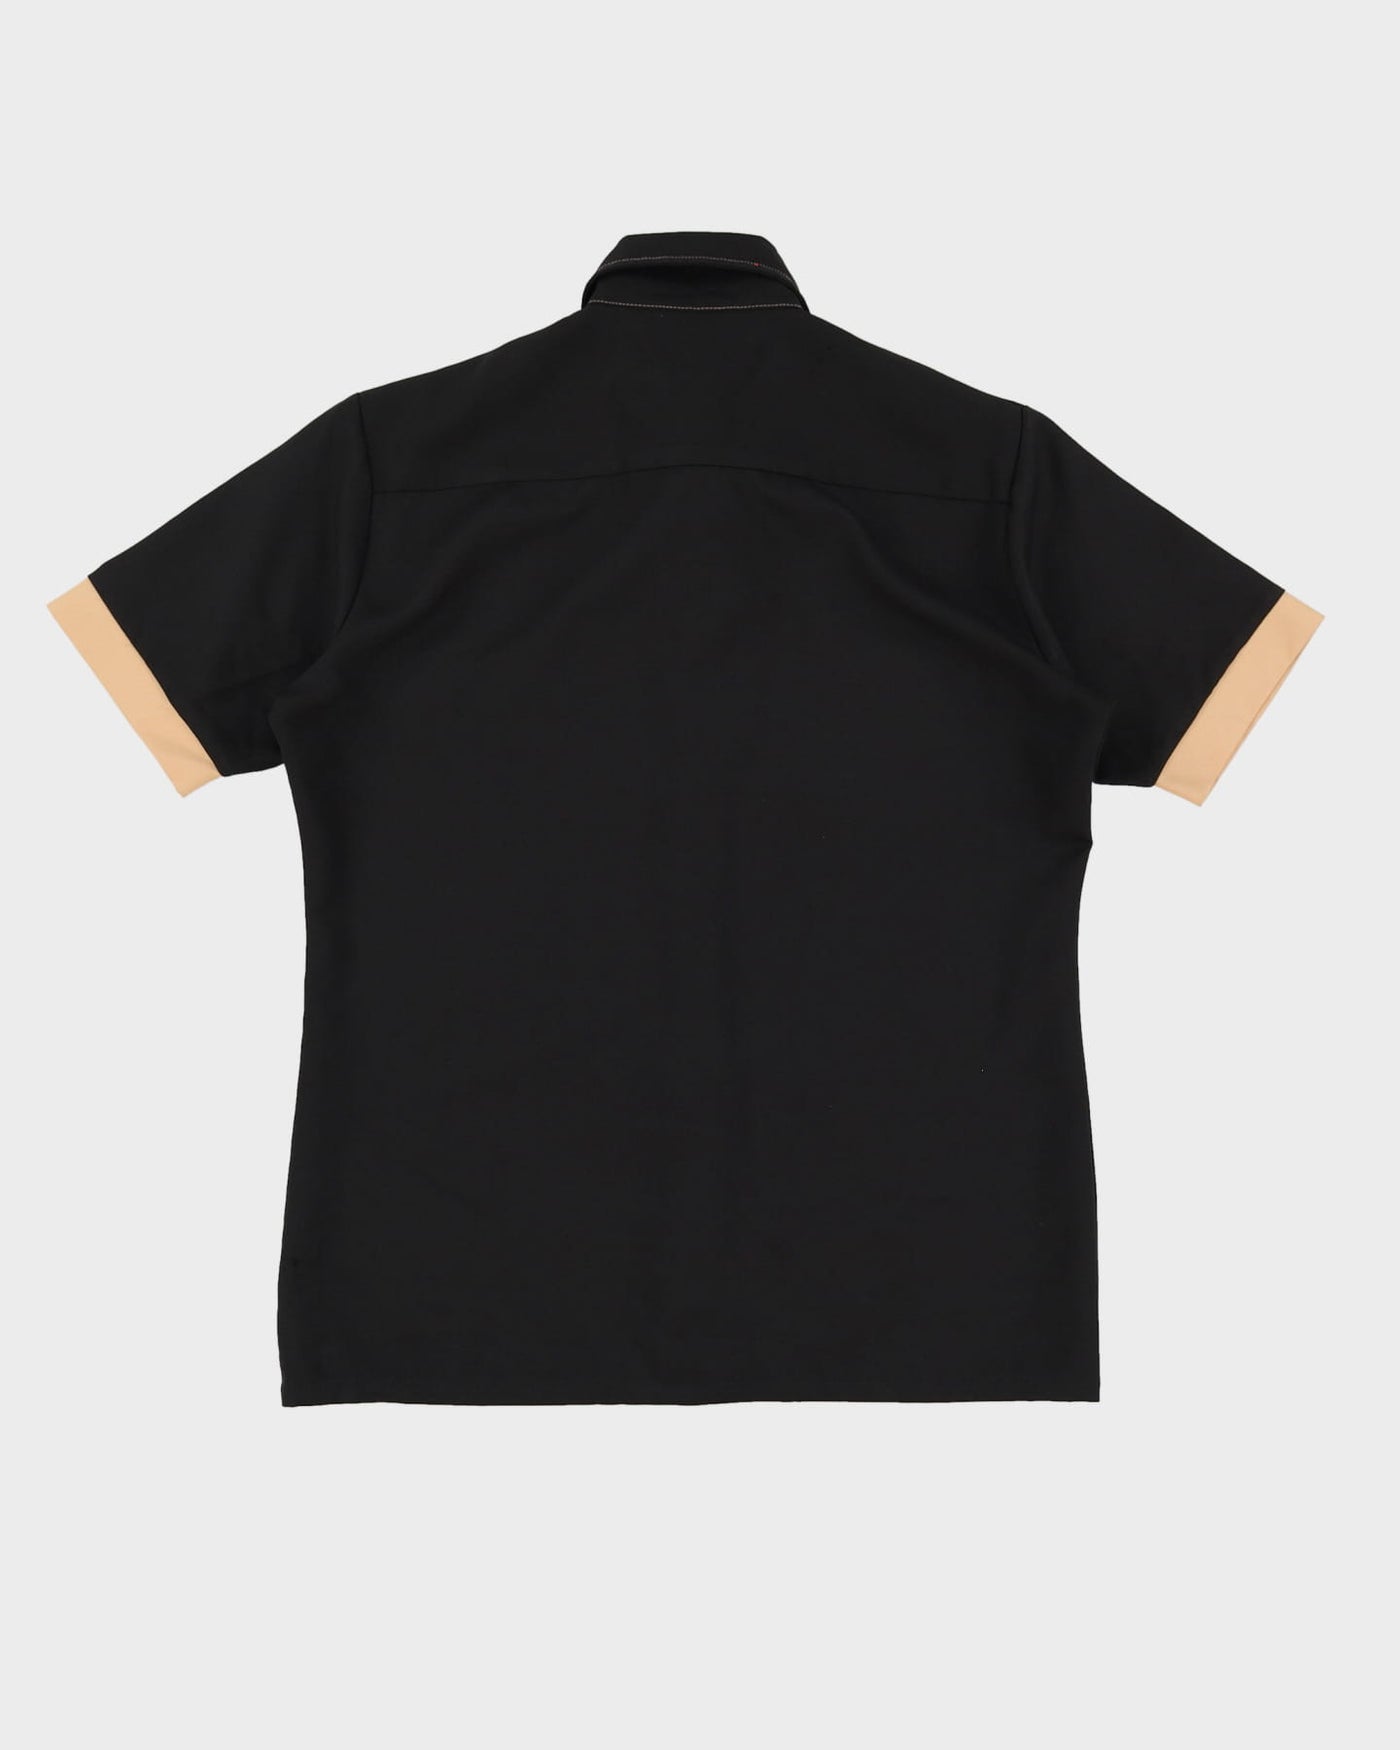 Vintage 70s Lancer Black Short-Sleeve Work Shirt - L